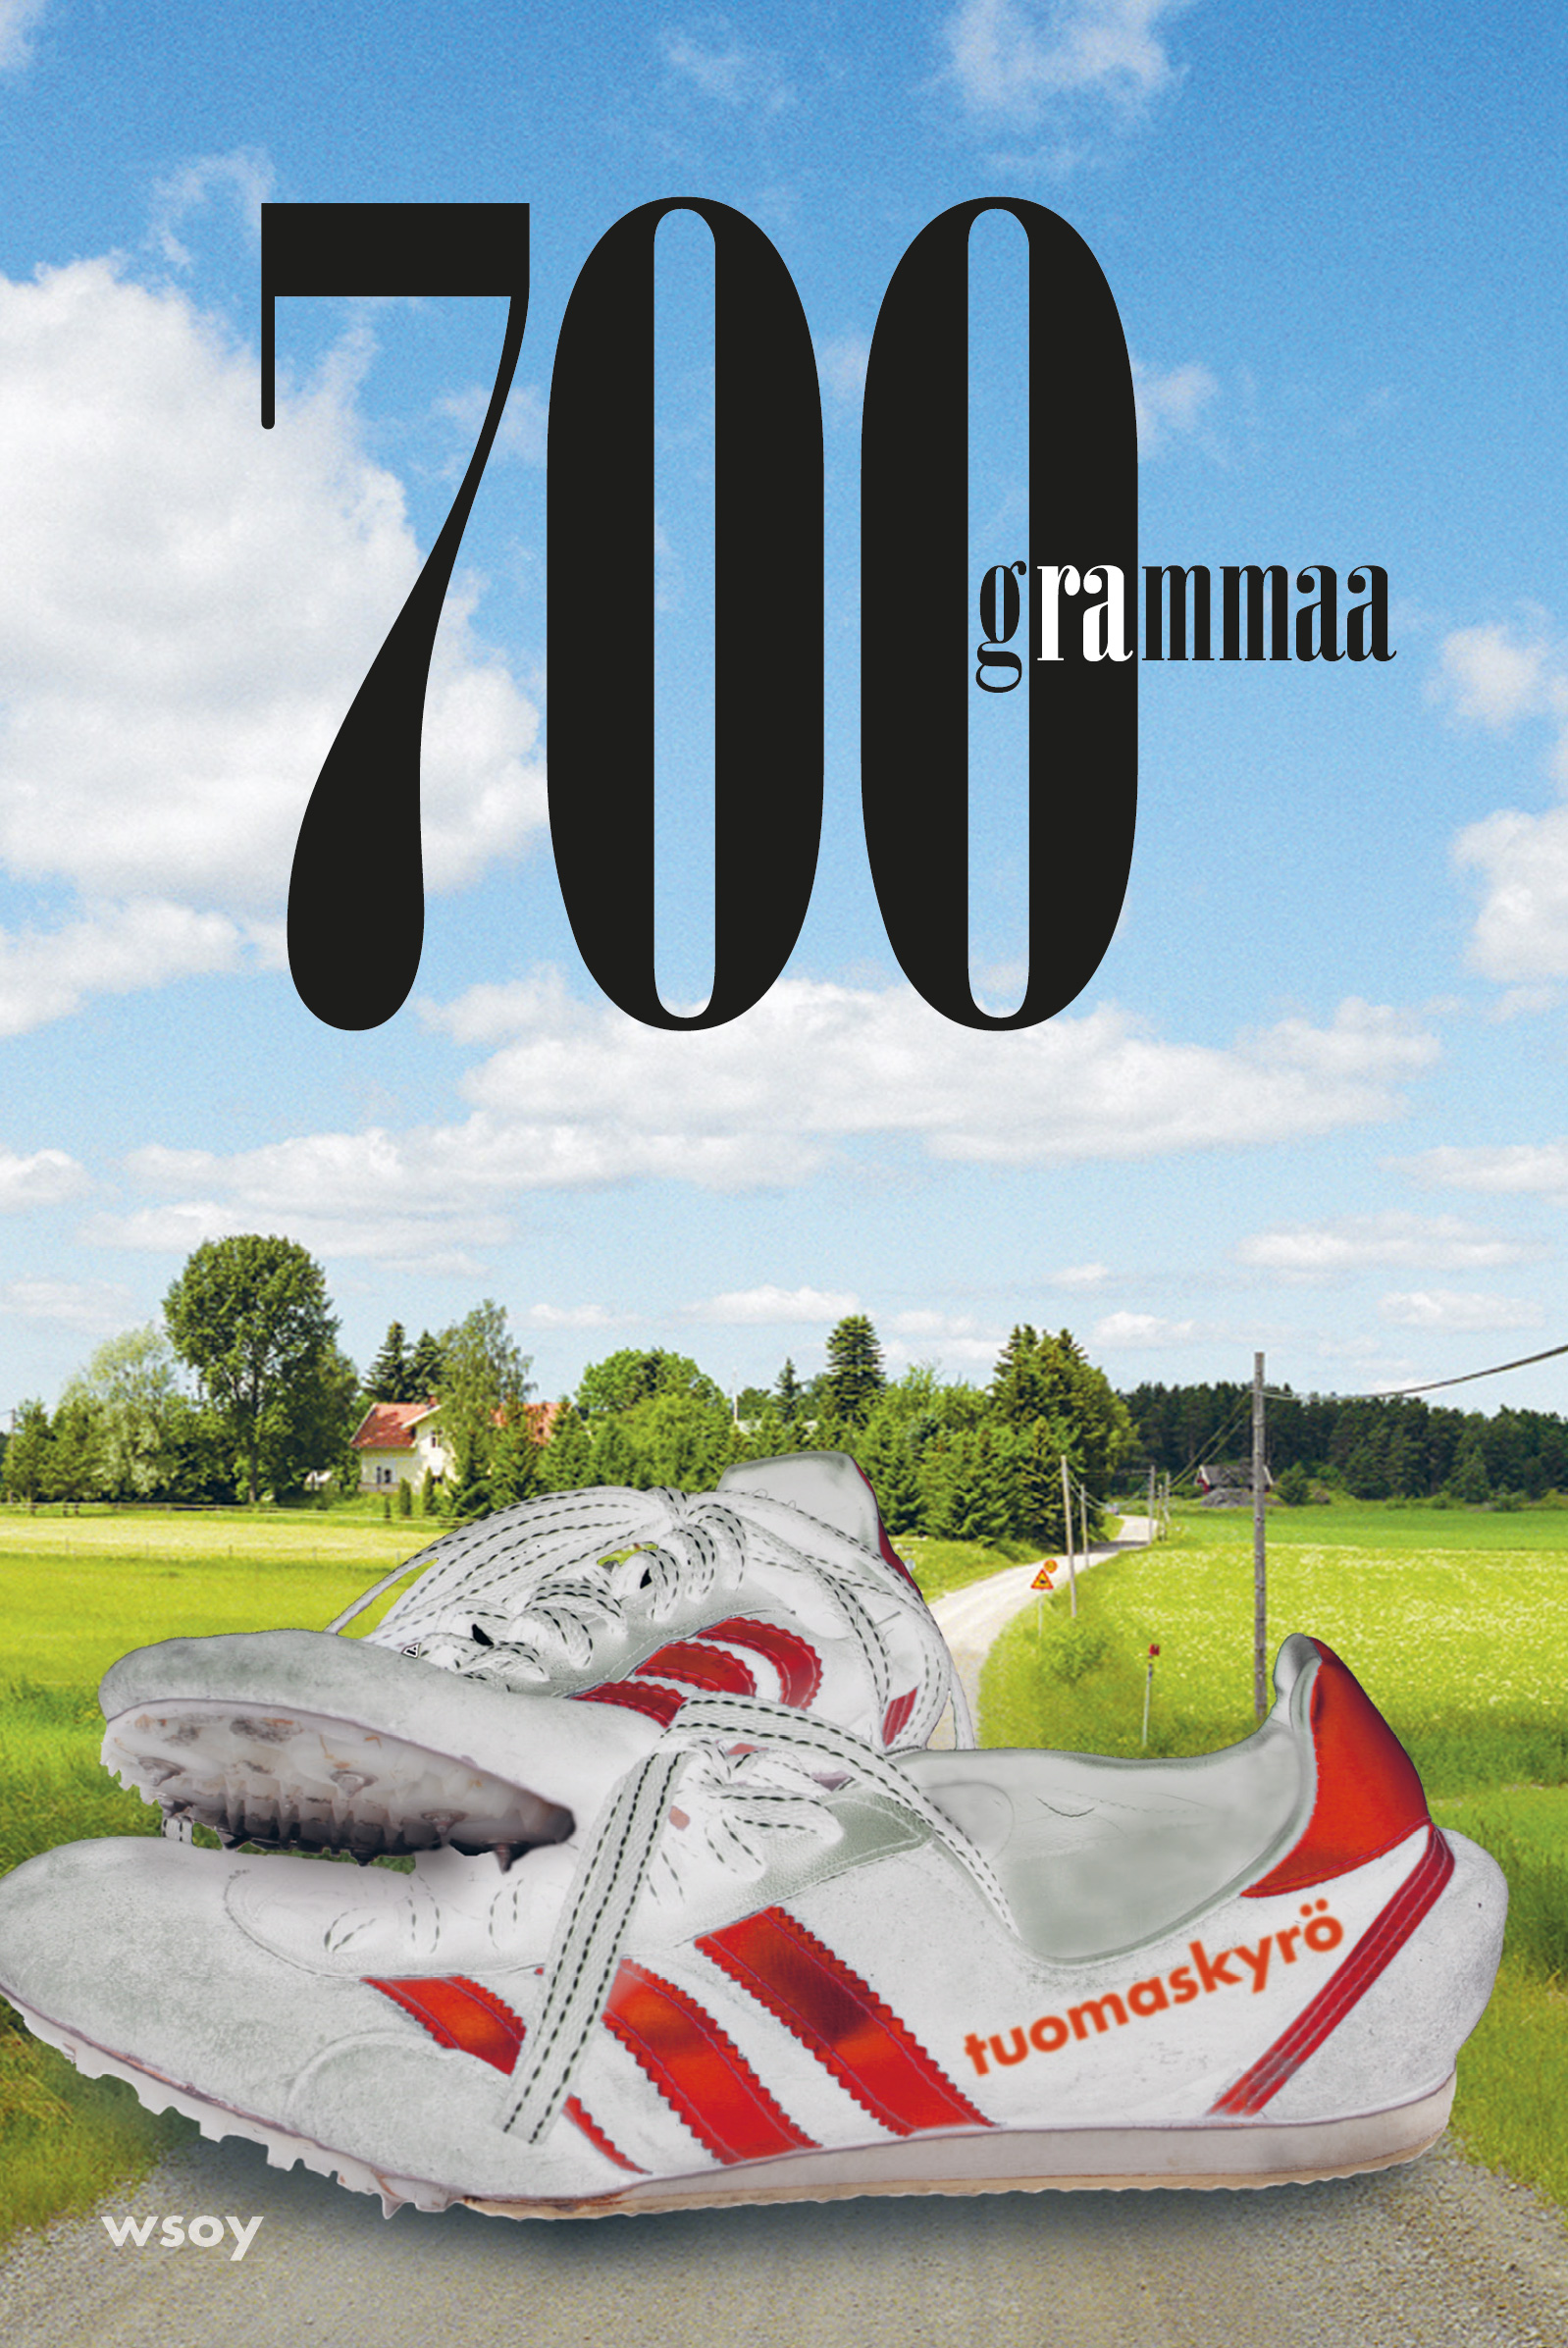 Kyrö, Tuomas - 700 grammaa, ebook